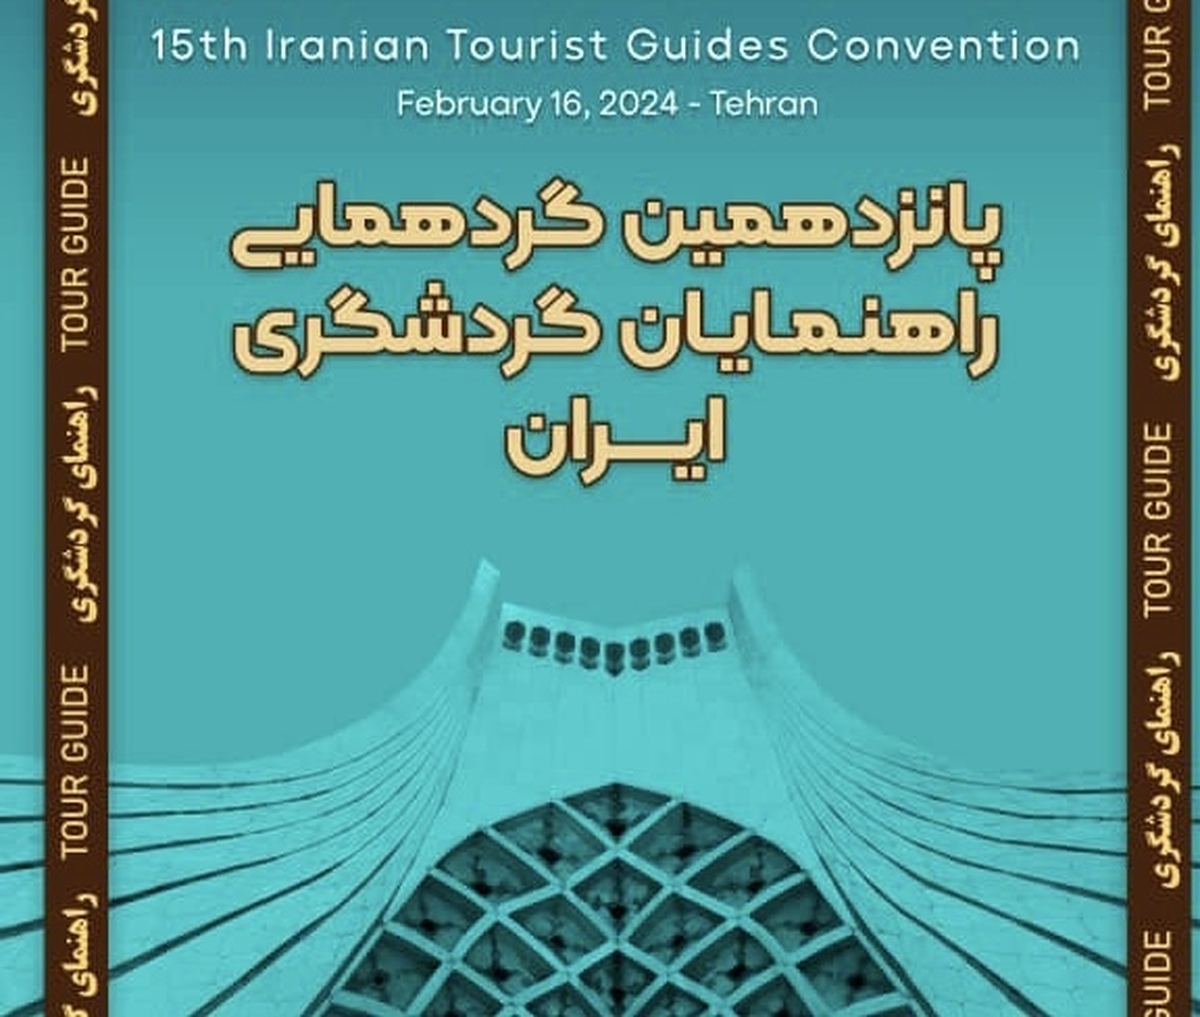 برگزاری پانزدهمین گردهمایی راهنمایان گردشگری ایران پس از یک وقفه ۴ ساله